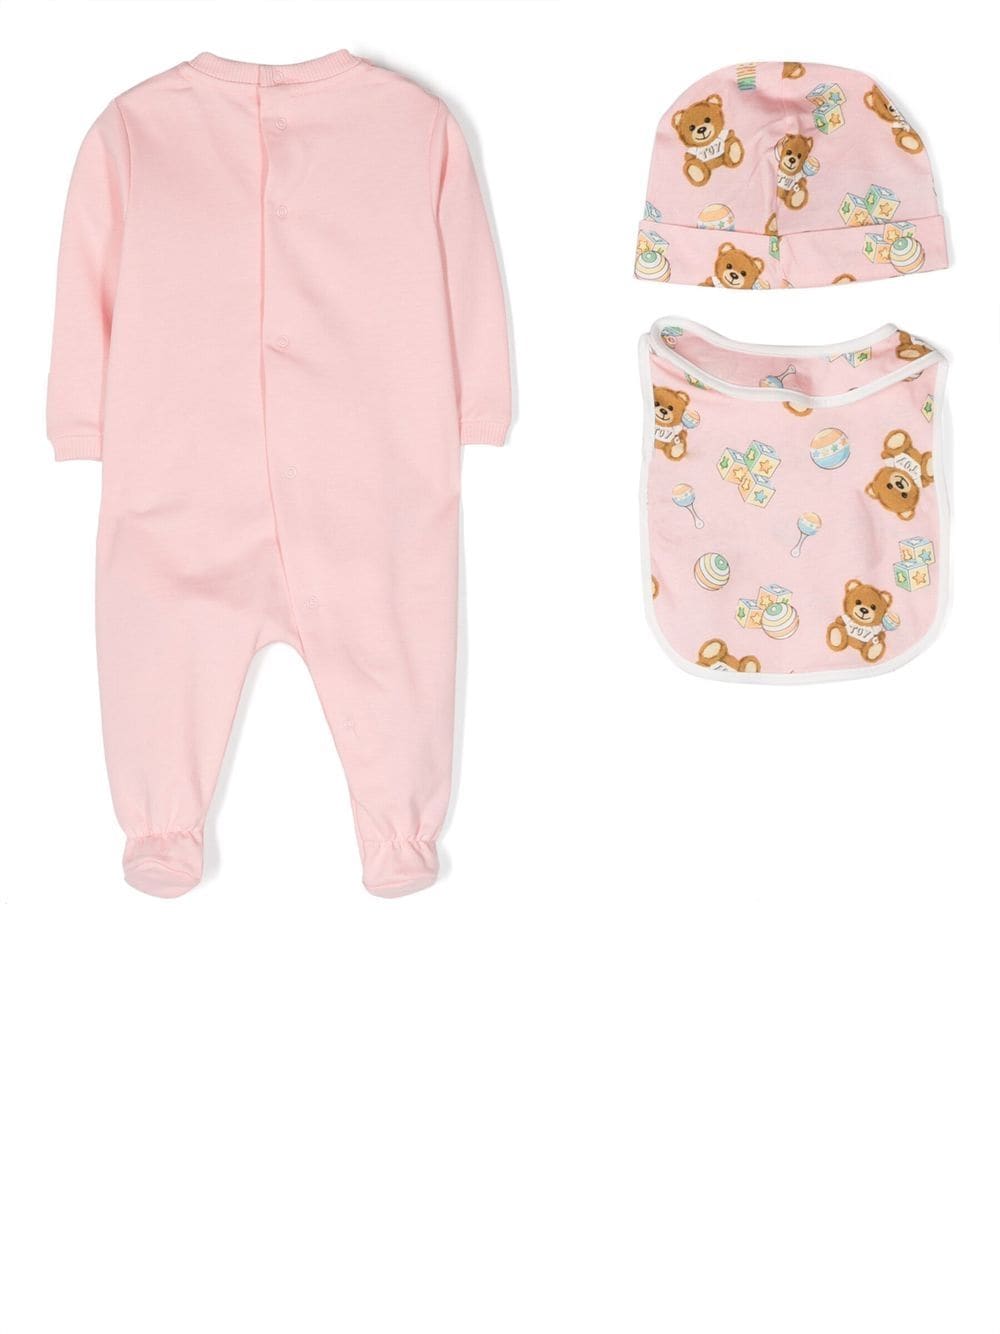 Tutina rosa per neonata con logo